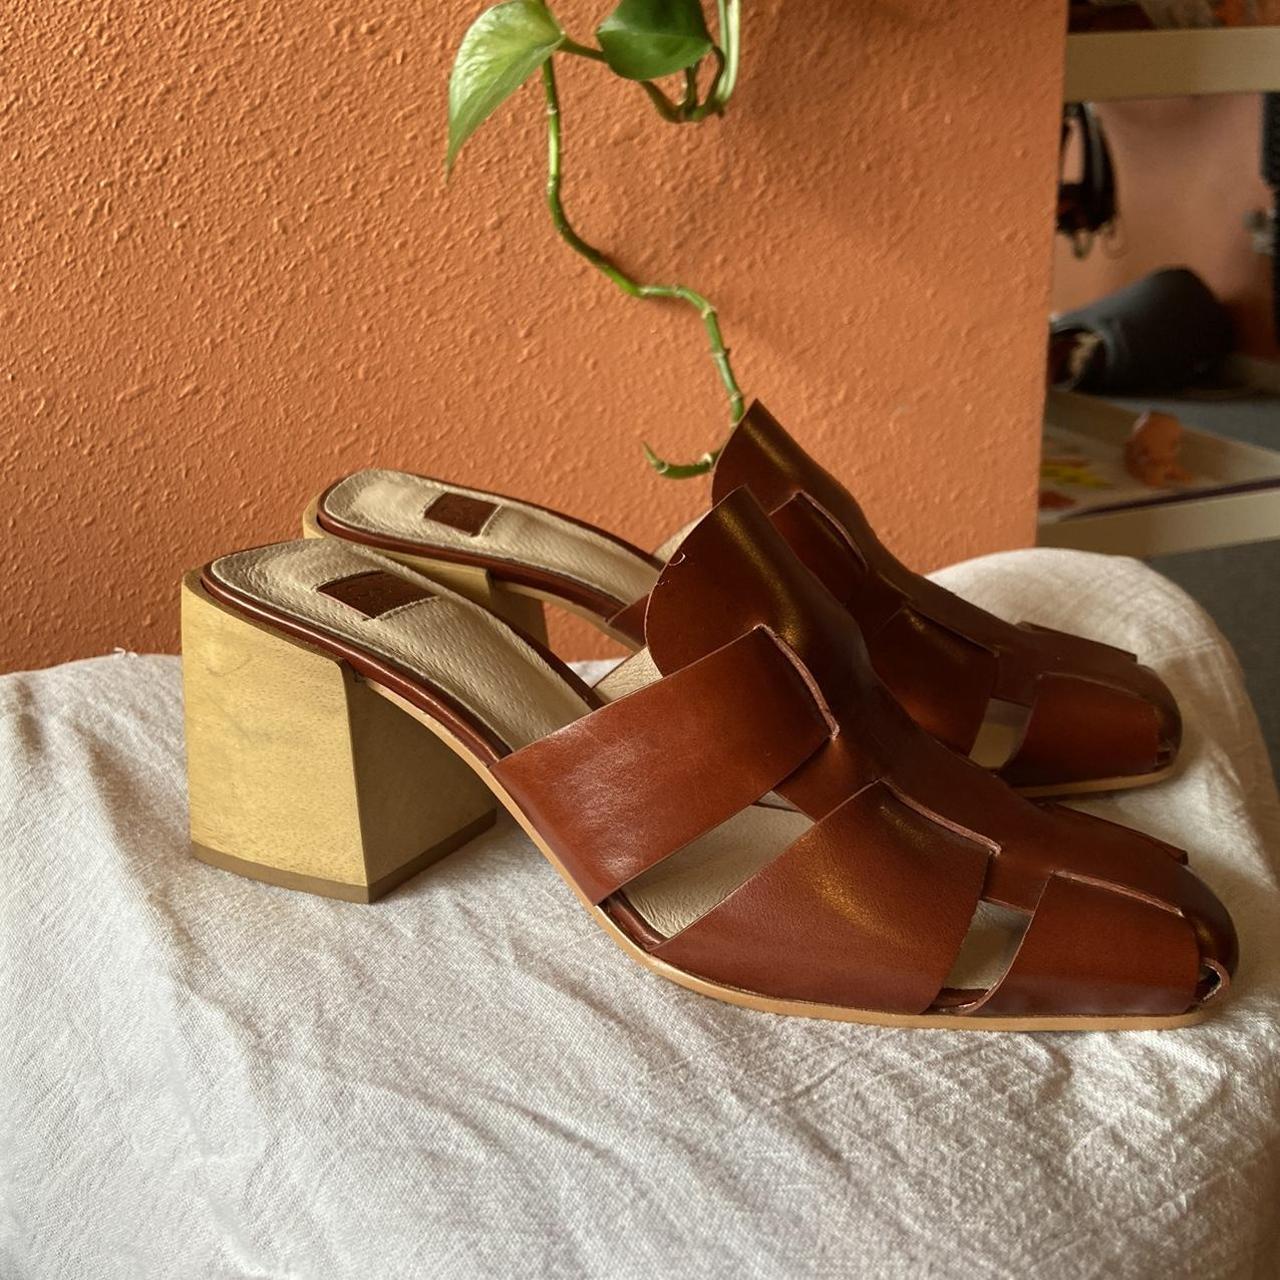 BRAND NEW Louise et cie block wooden heel maroon - Depop